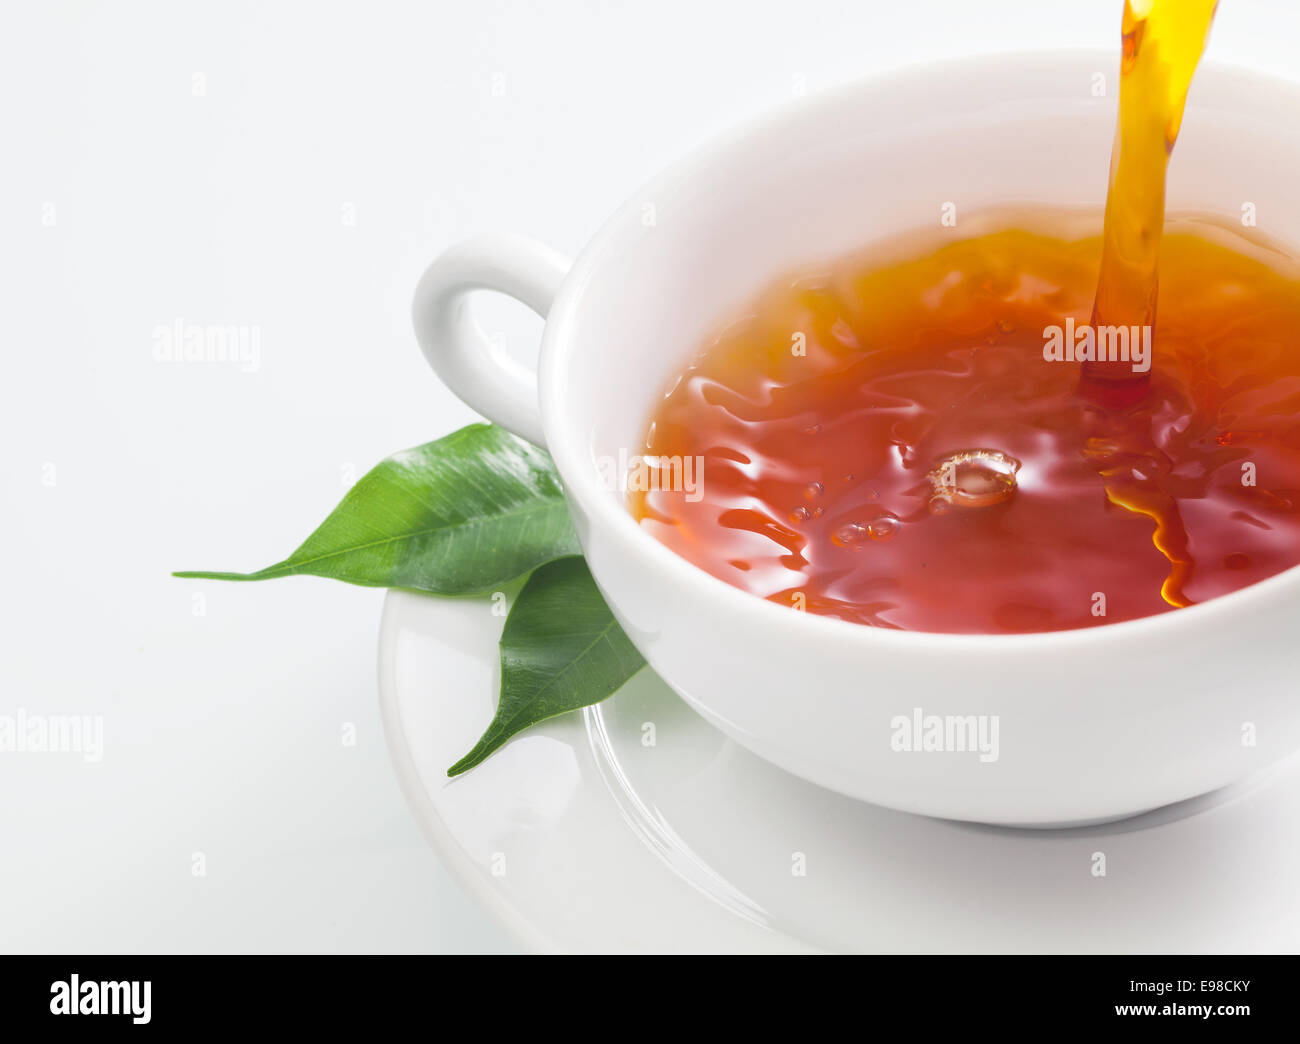 Vue rapprochée d'une personne versant une tasse de thé rafraîchissante dans une tasse blanche avec des feuilles de thé vert reposant sur la soucoupe sur un fond blanc Banque D'Images